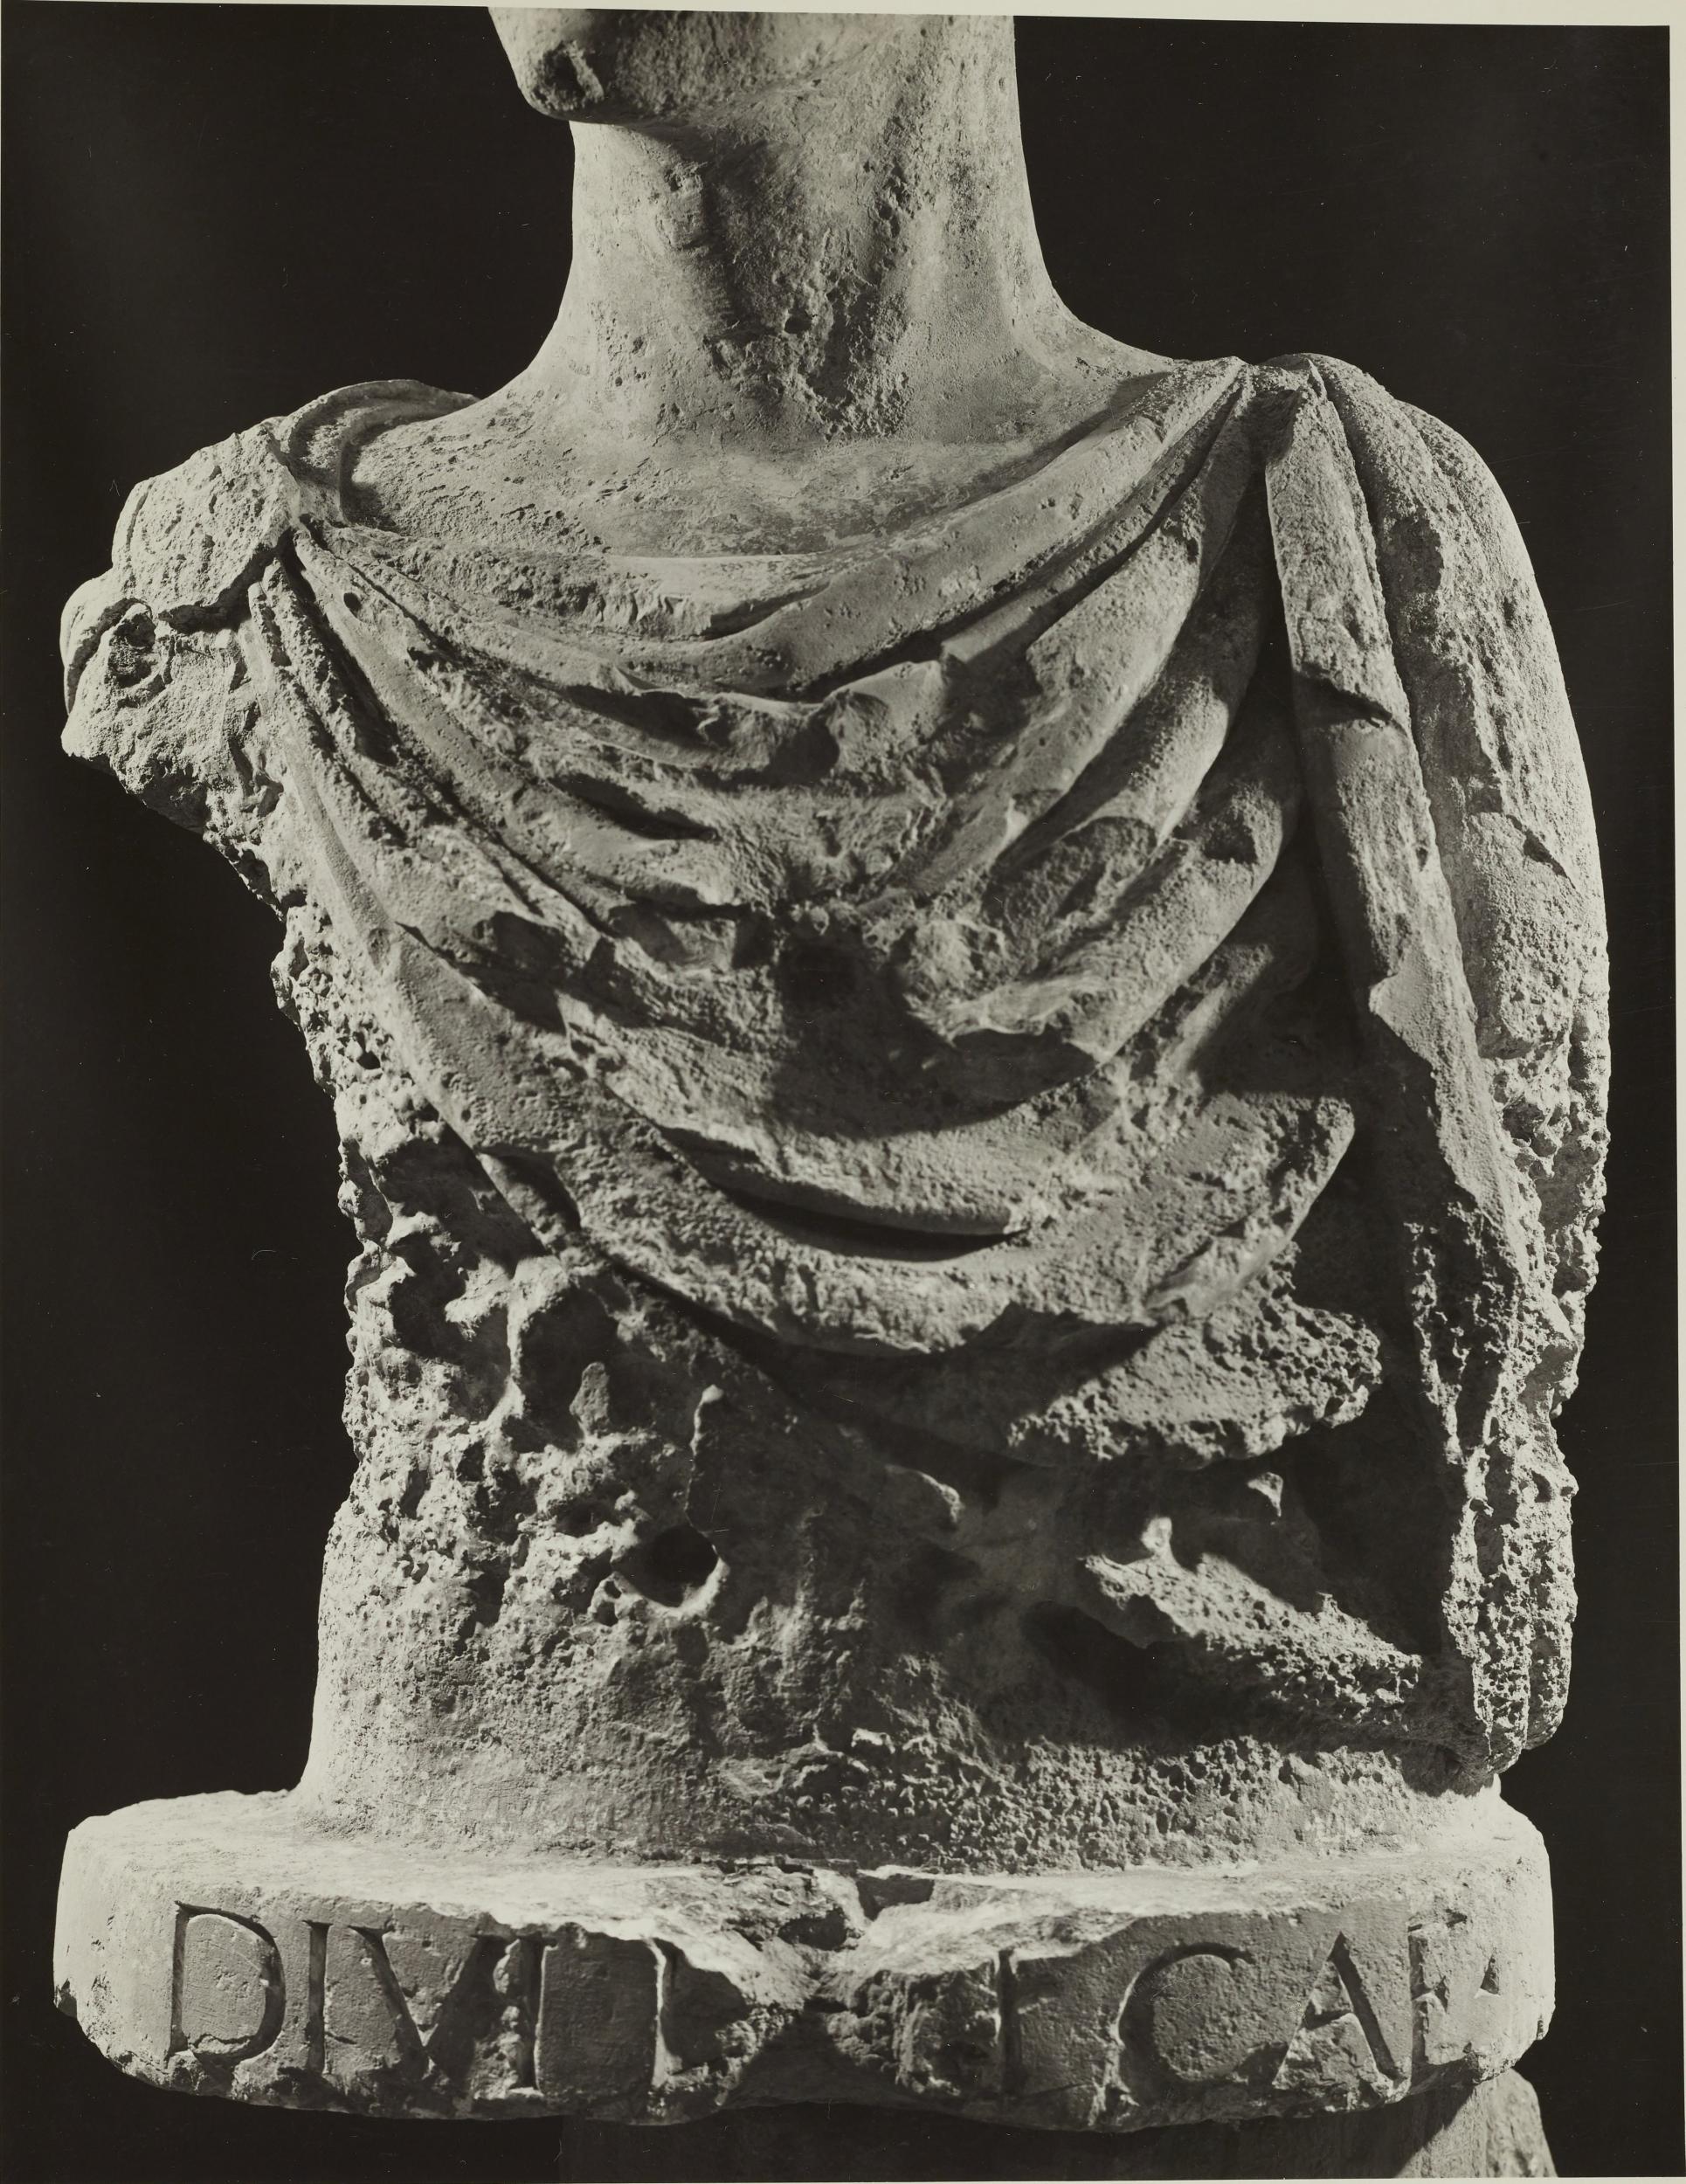 Fotografo non identificato, Barletta - Castello, Museo Civico, busto detto di Federico II, 1951-1975, gelatina ai sali d'argento/carta, MPI6023063